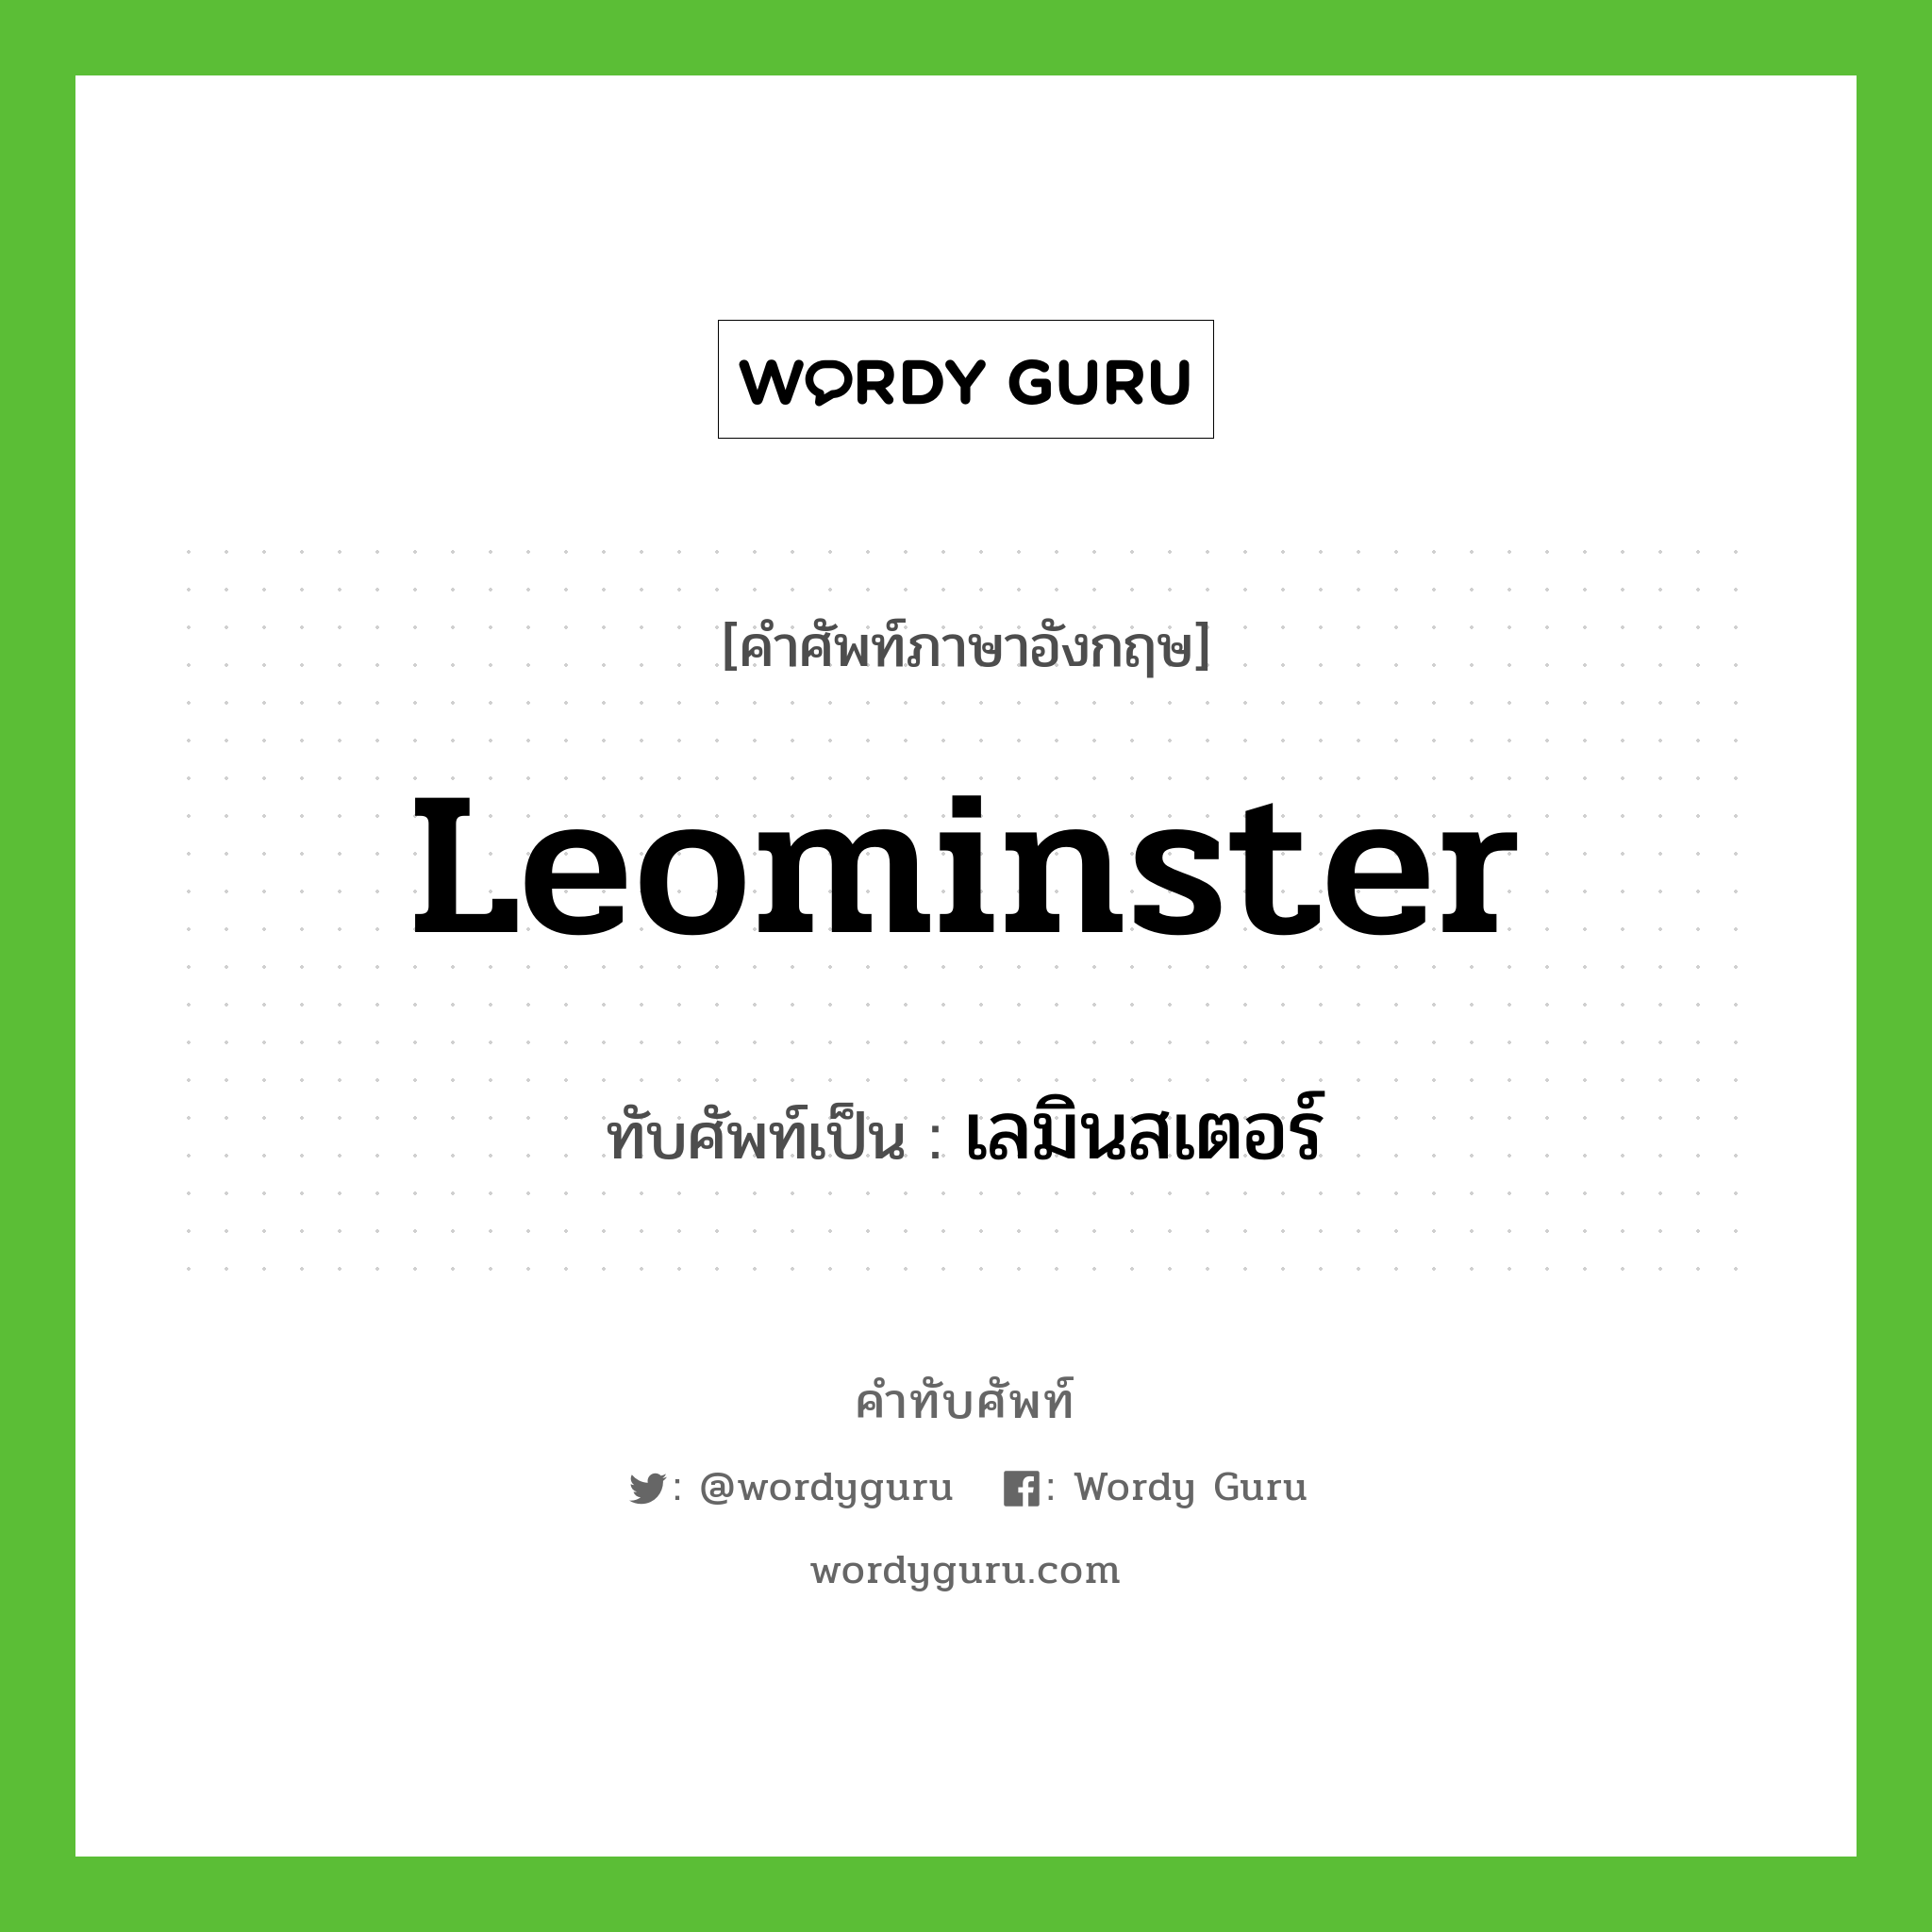 Leominster เขียนเป็นคำไทยว่าอะไร?, คำศัพท์ภาษาอังกฤษ Leominster ทับศัพท์เป็น เลมินสเตอร์